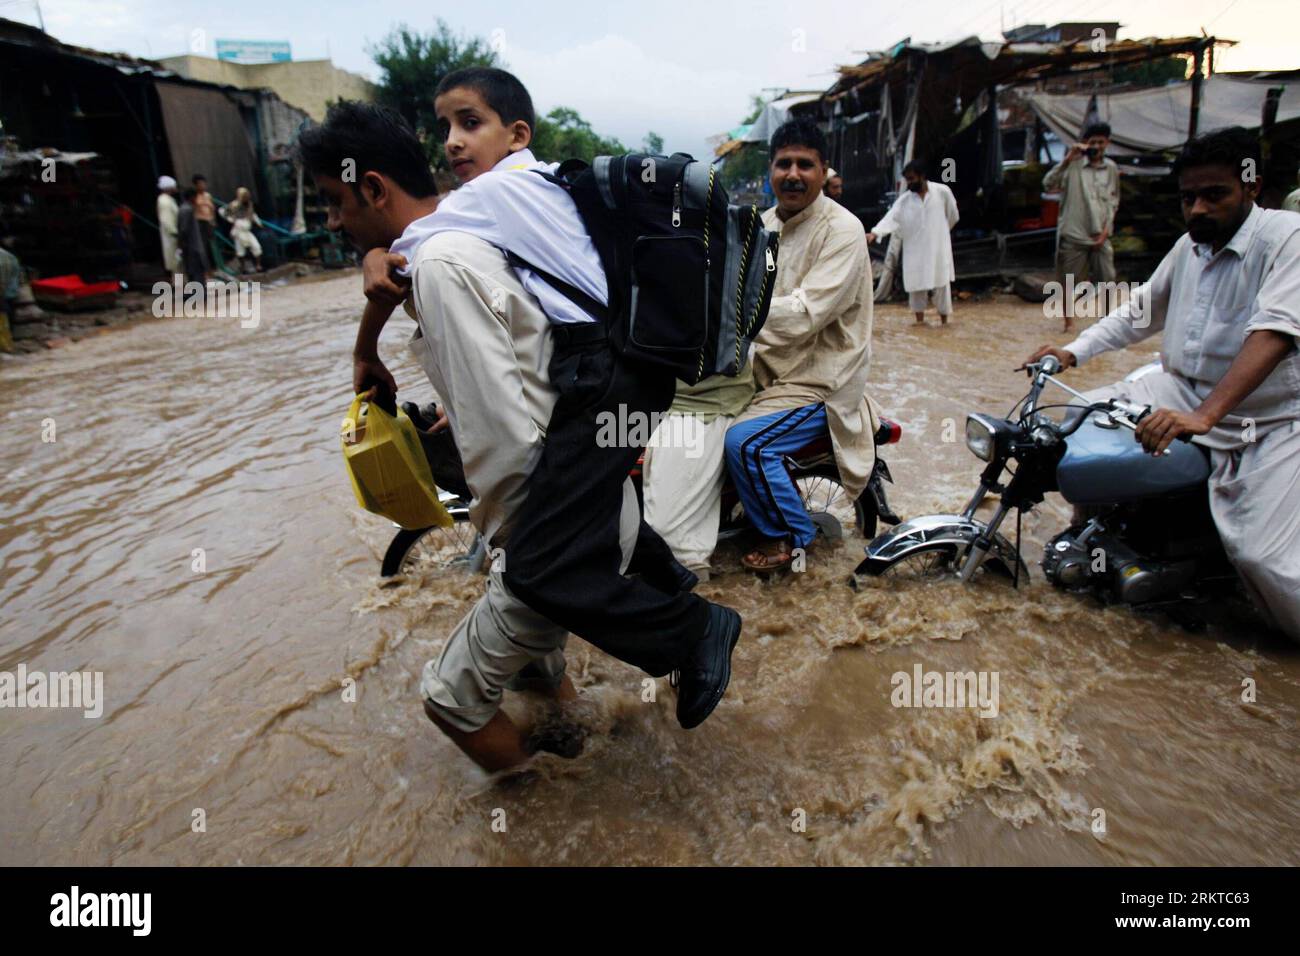 Bildnummer: 58443286 Datum: 07.09.2012 Copyright: imago/Xinhua (120907) -- PESHAWAR, 7. September 2012 (Xinhua) -- Versuch, überflutete Straßen nach schweren Regenfällen im nordwestlichen pakistanischen Peshawar am 7. September 2012 zu überqueren. Mindestens 50 Menschen wurden getötet und mehrere andere wurden vermisst, da sintflutartige Regenfälle in den letzten 24 Stunden Teile von Ost-, Süd-, Nordwest- und Nordostpakistan getroffen haben, sagten lokale Medien und Beamte am Donnerstag. (Xinhua/Umar Qayyum) PAKISTAN-REGENFLUT PUBLICATIONxNOTxINxCHN Gesellschaft Flut Überschwemmungen Wetter x0x xmb 2012 quer 58443286 Datum 07 09 2012 Copyright Imago XINHUA Peshawar Stockfoto